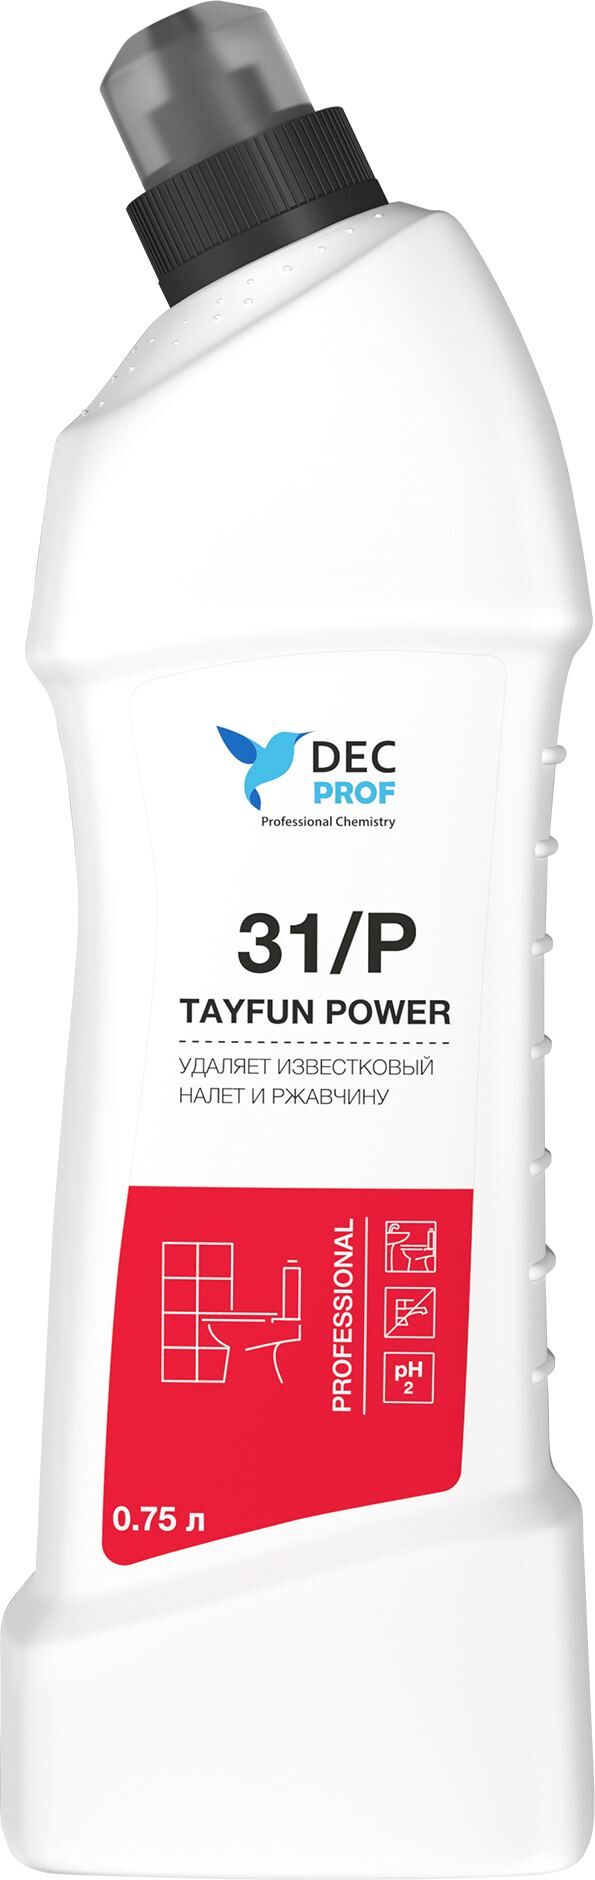 DECPROF 31/P TAYFUN Средство для ежедневной мойки санузлов и ванных комнат 0,75л